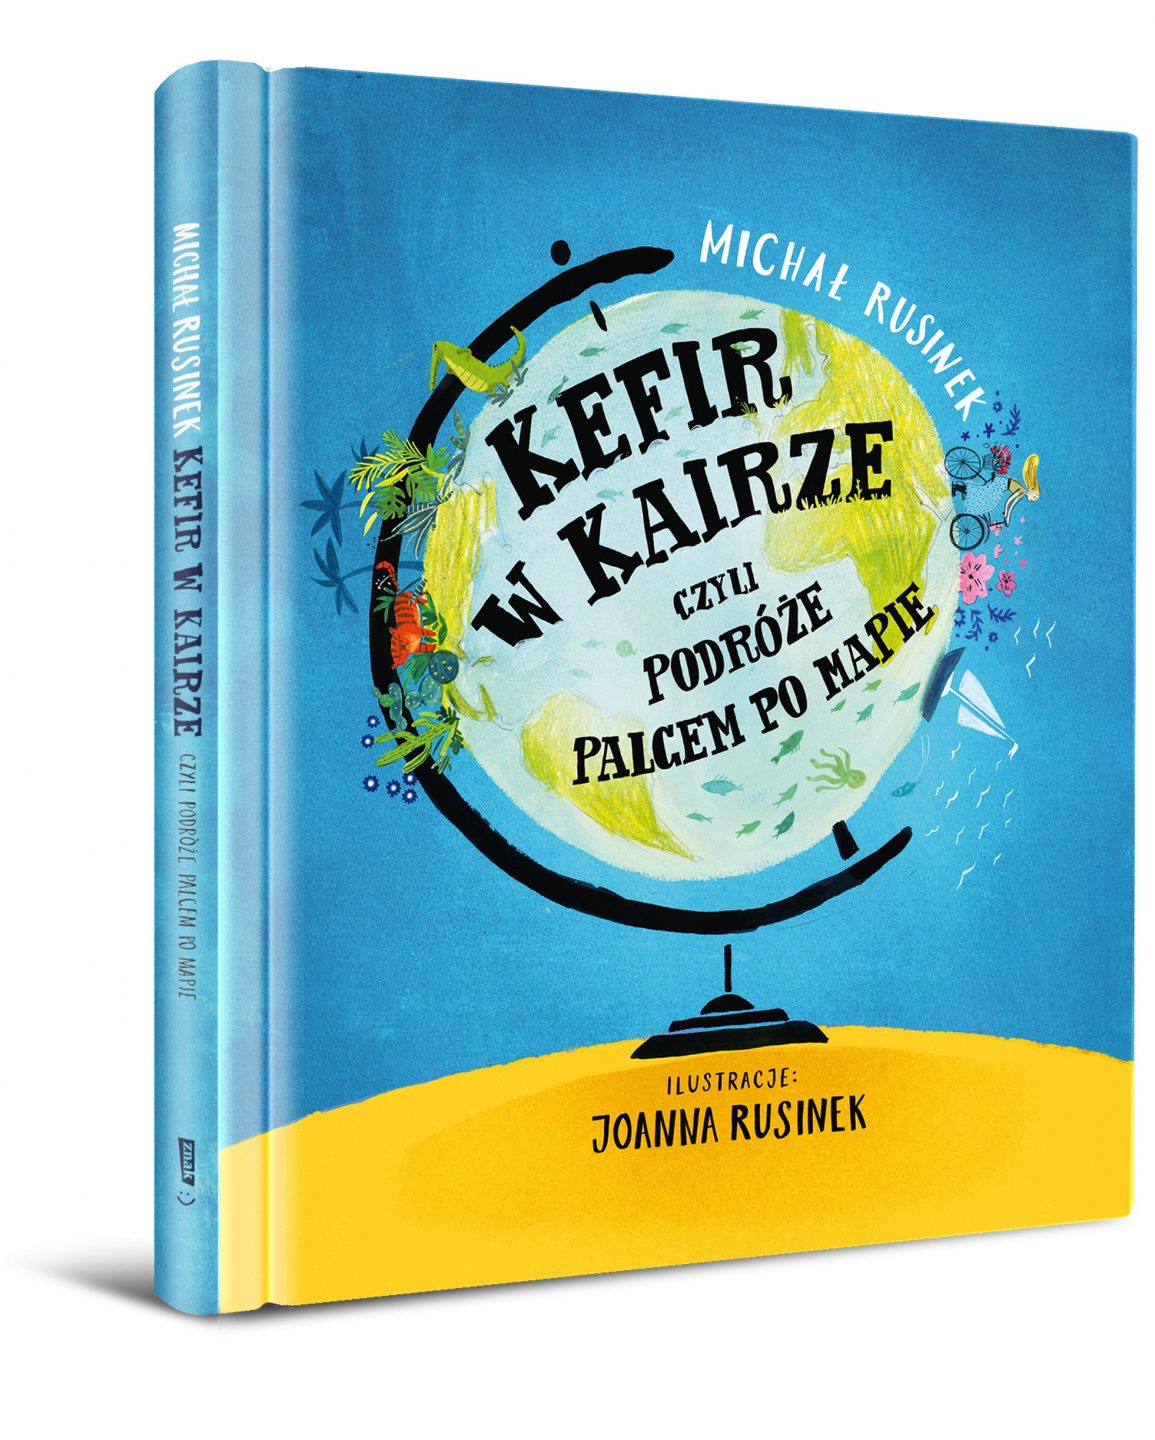 Okładka książki: Kefir w Kairze, czyli podróże palcem po mapie